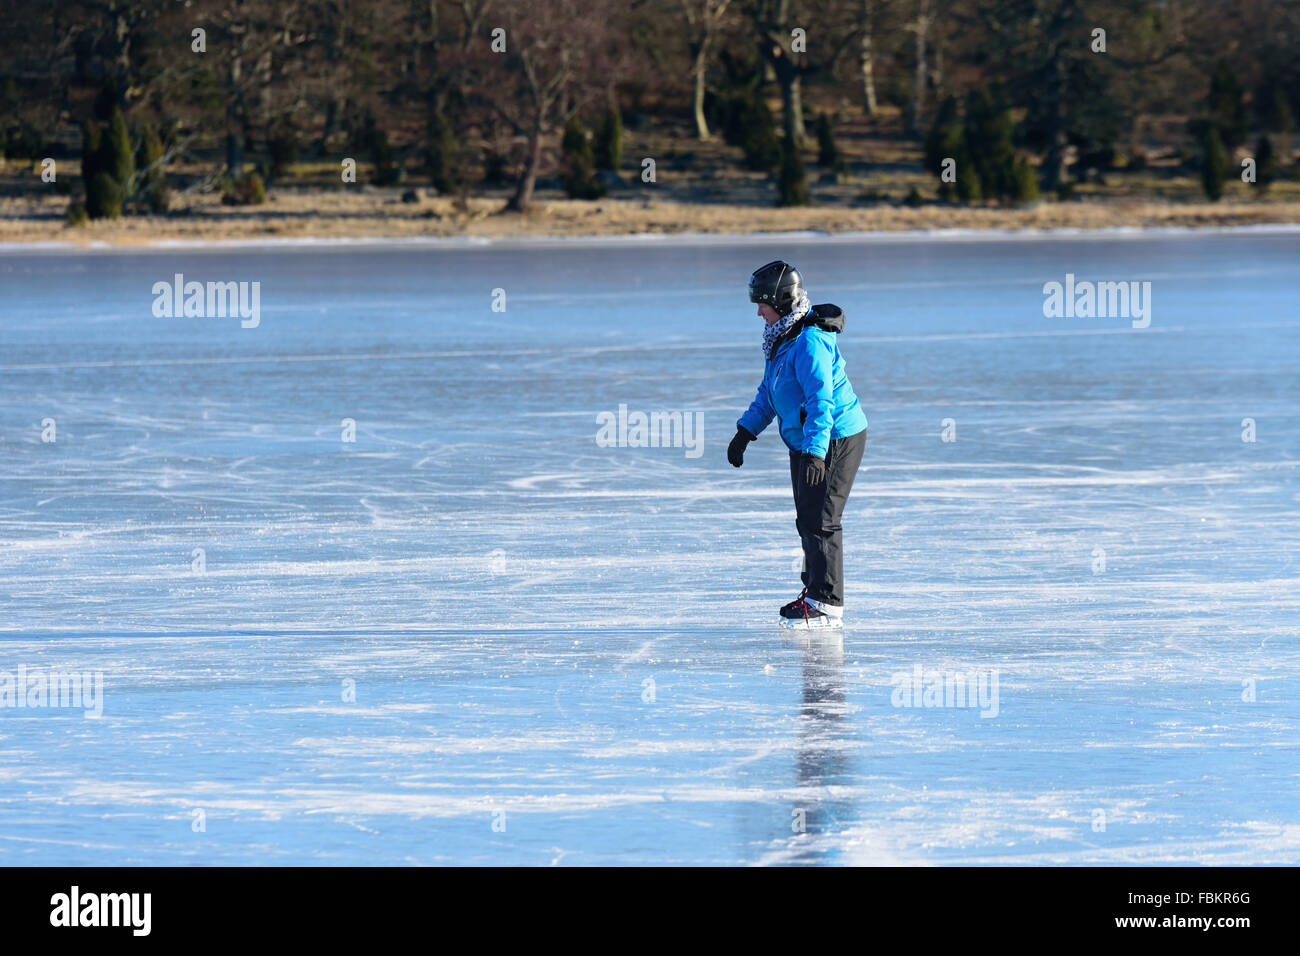 Listerby, Schweden - 17. Januar 2016: Eine unbekannte Person versucht, auf Eisschollen zu skaten. Die Person sieht ein bisschen müde und unsicher Stockfoto